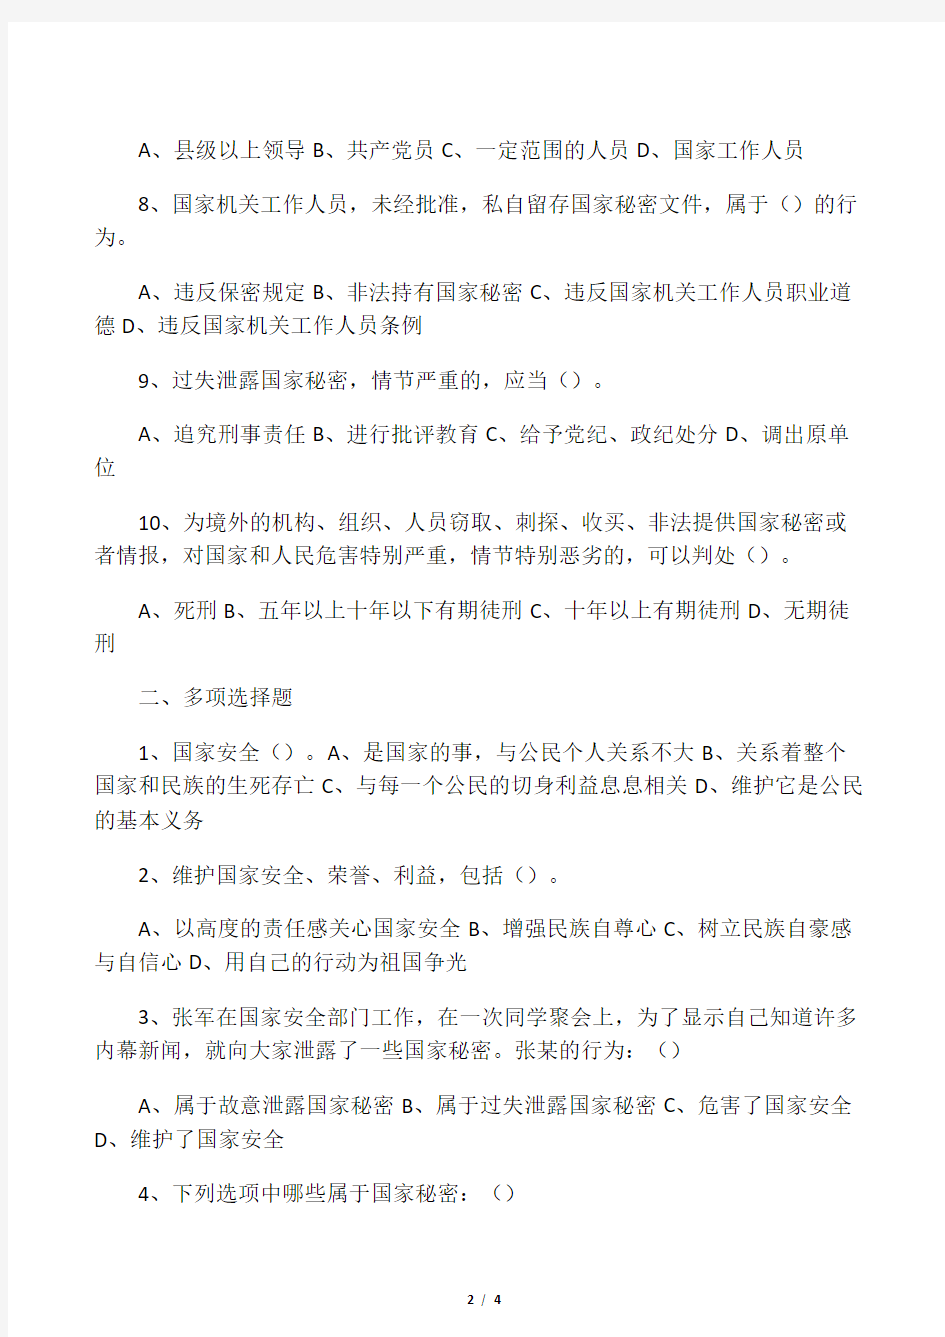 中华人民共和国国家安全法 试卷 及 答案